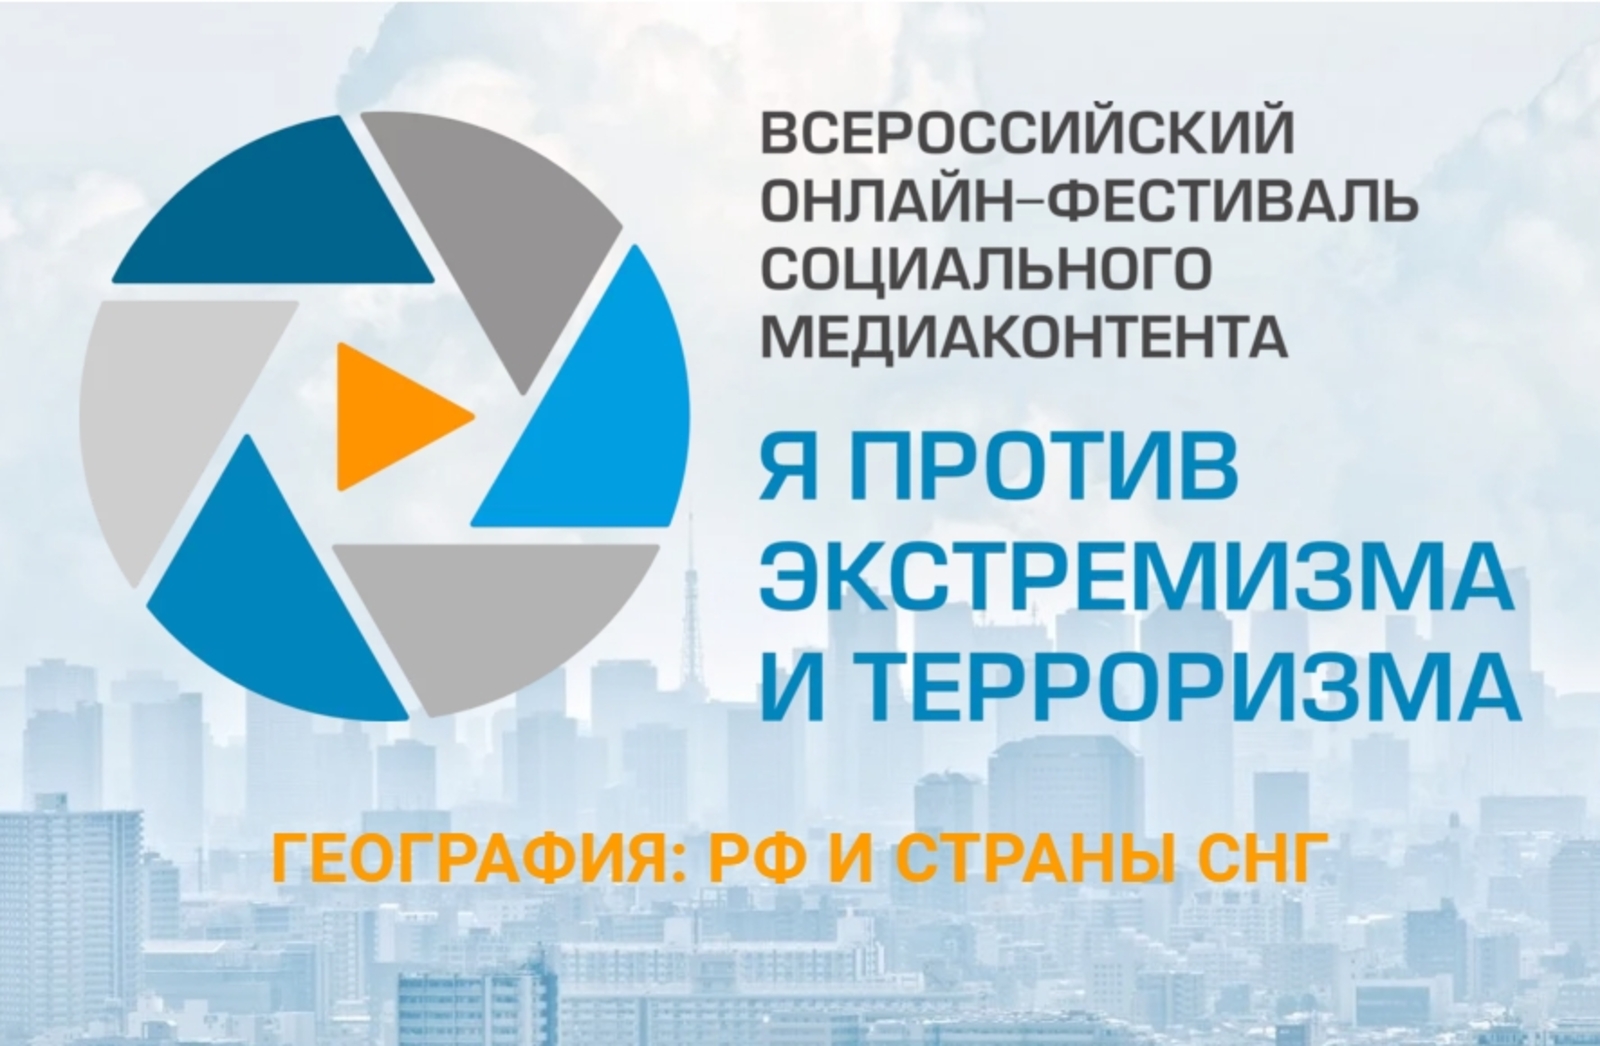 Объявлено о проведении Всероссийского онлайн-фестиваля социального медиаконтента